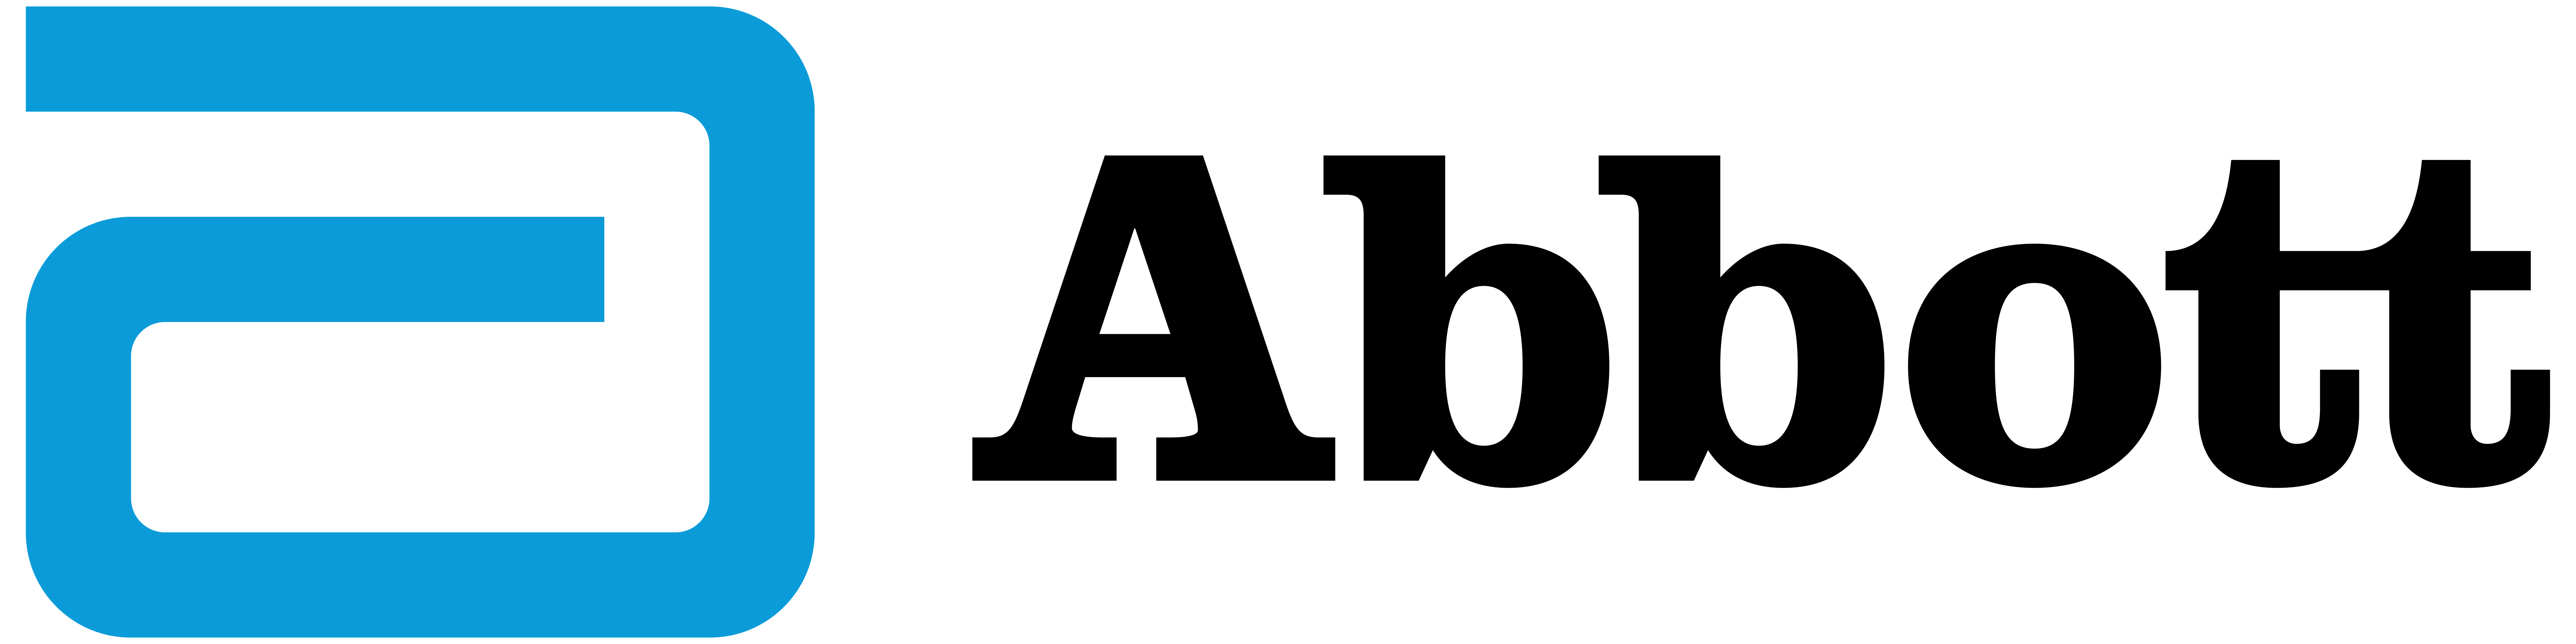 Logo Abbott horizontal